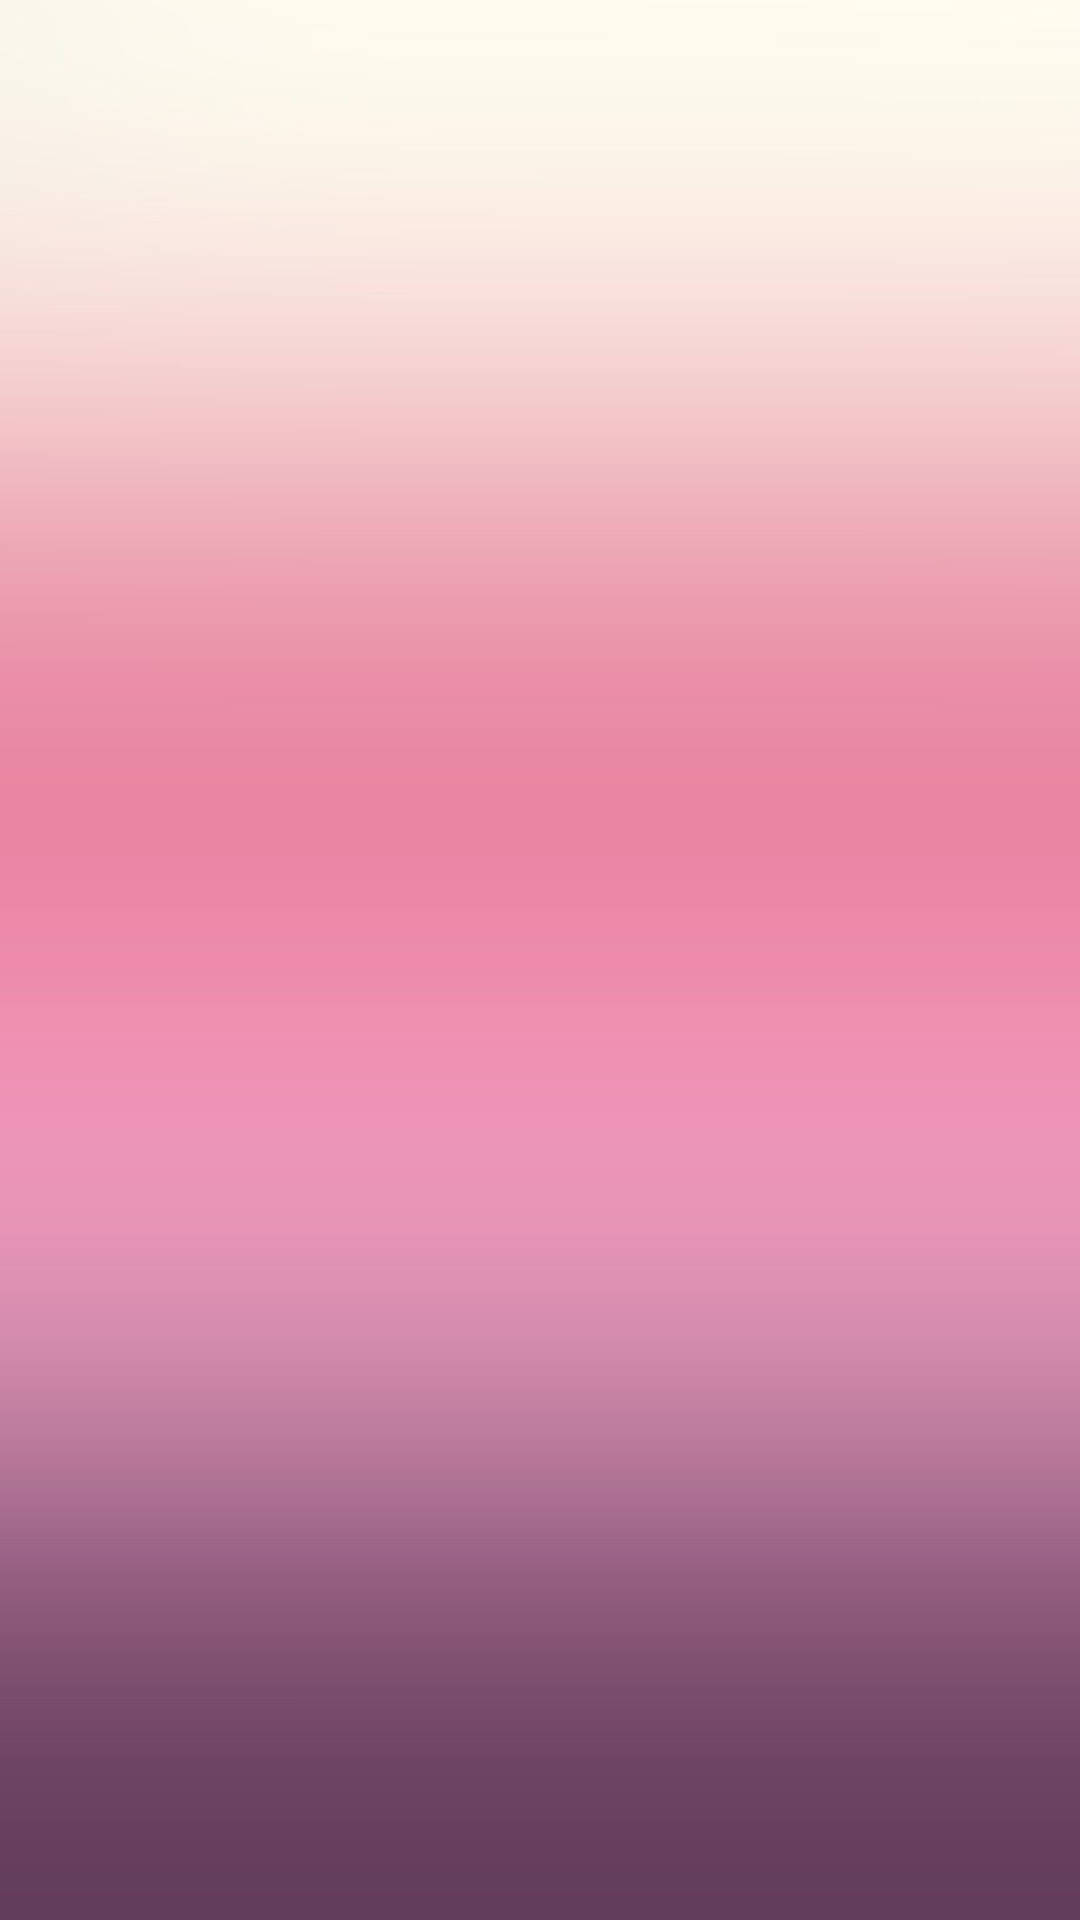 Tauchensie Ein In Eine Welt Des Pastellrosa Mit Diesem Luxuriösen Iphone Wallpaper